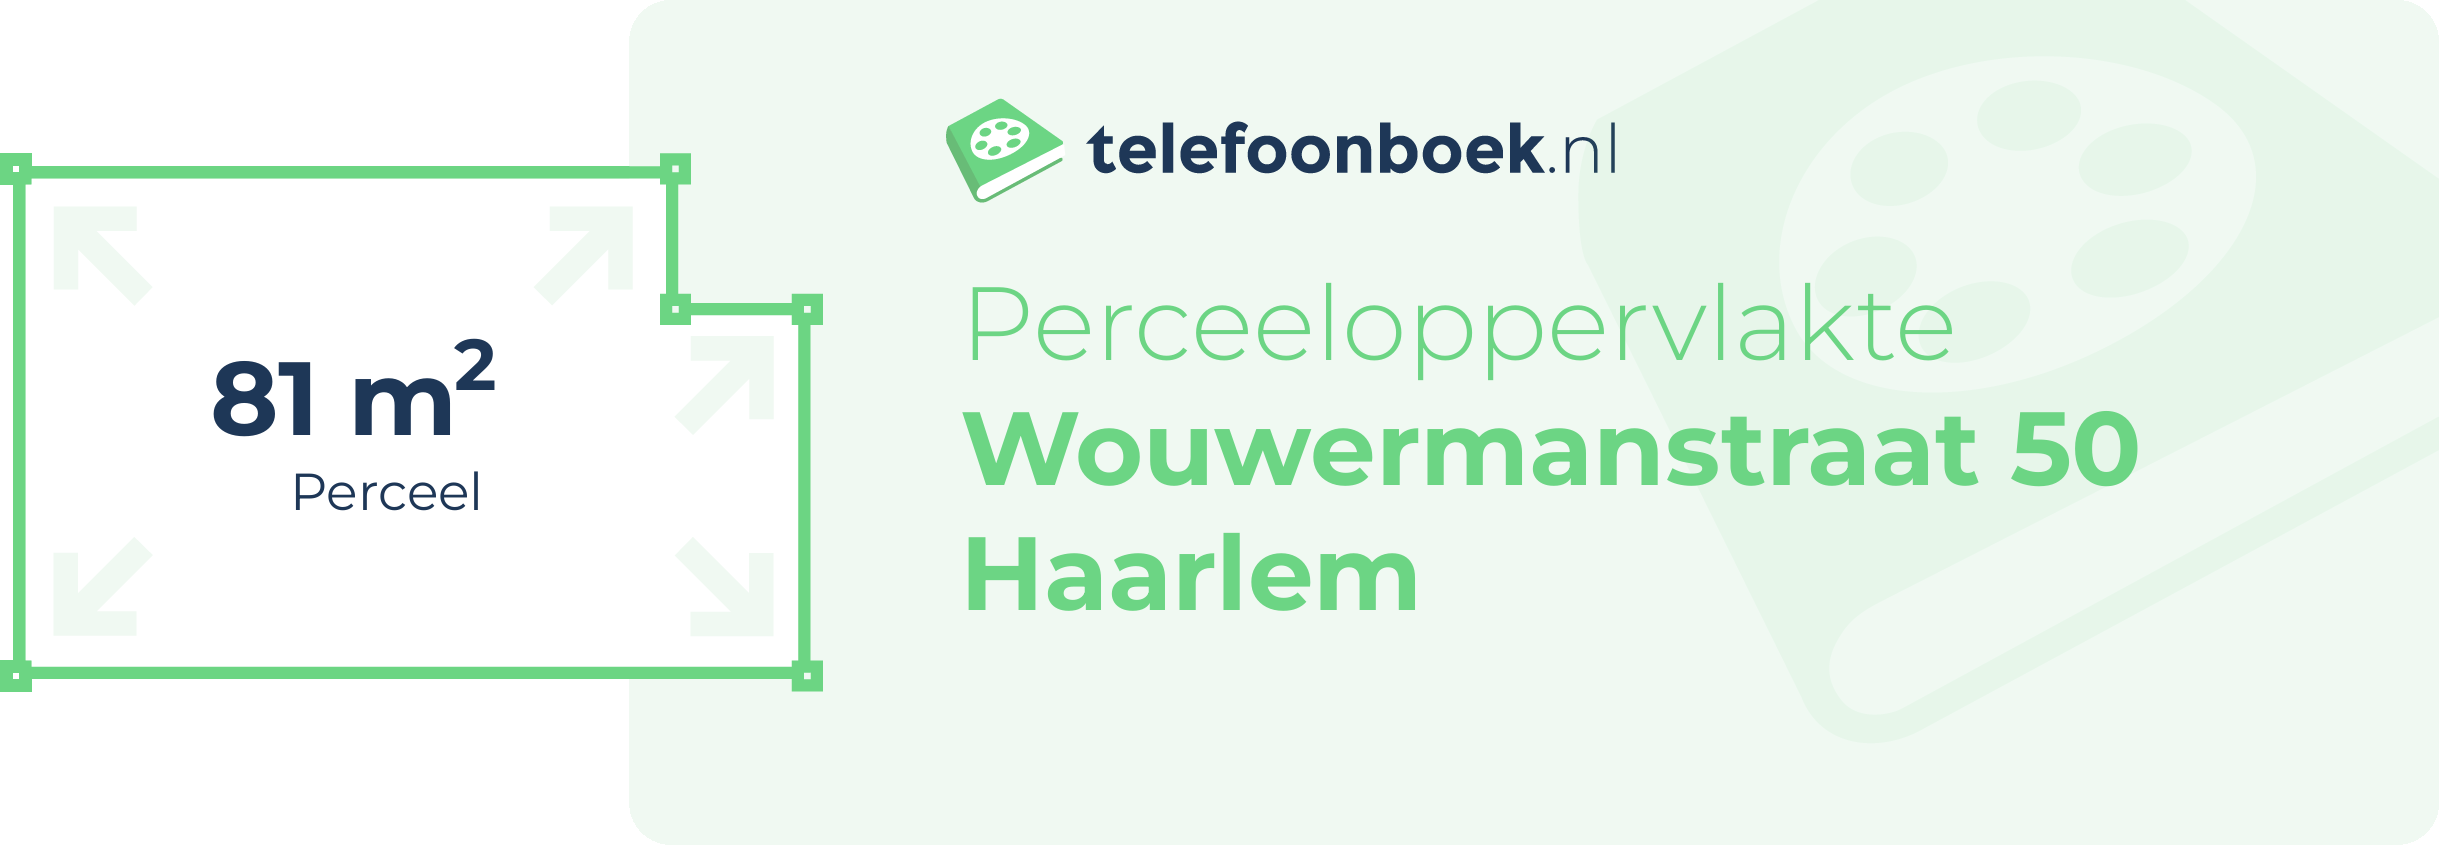 Perceeloppervlakte Wouwermanstraat 50 Haarlem